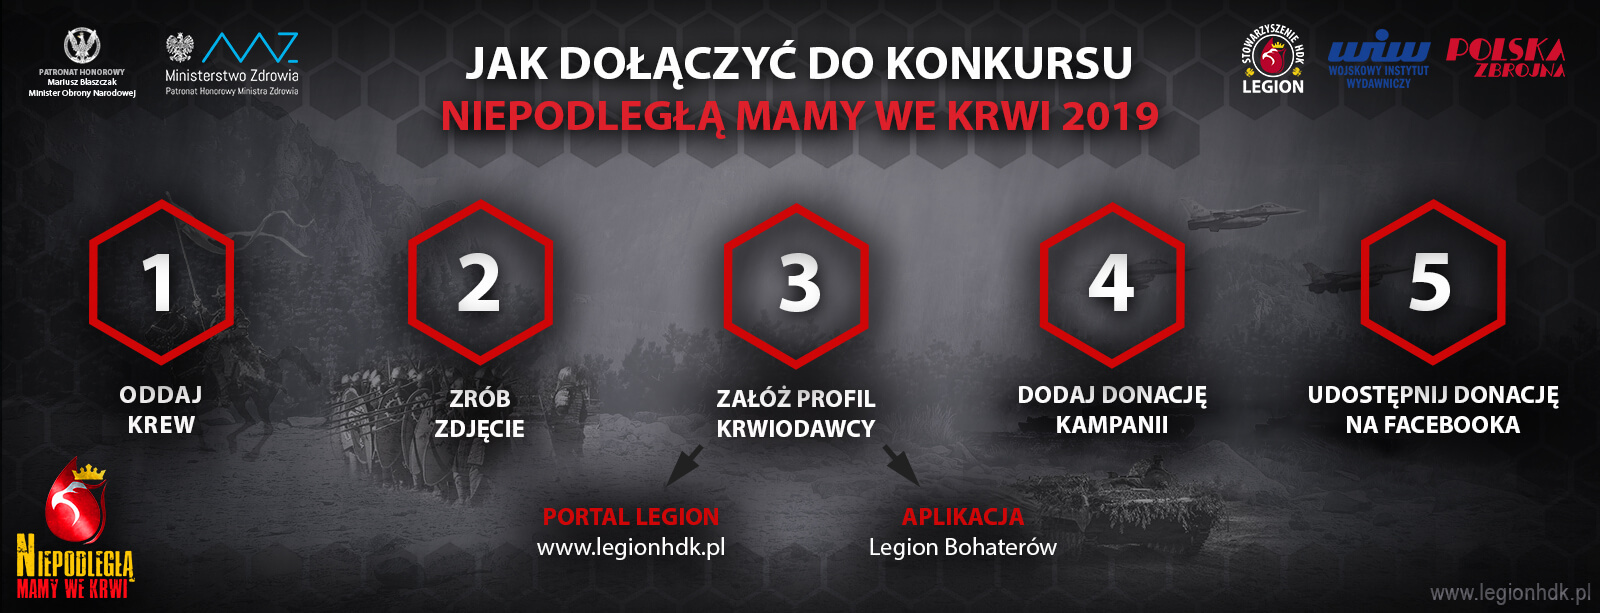 jak dolaczyc konkurs niepodlegla mamy we krwi polska zbrojna krwiodawstwo legionhdk